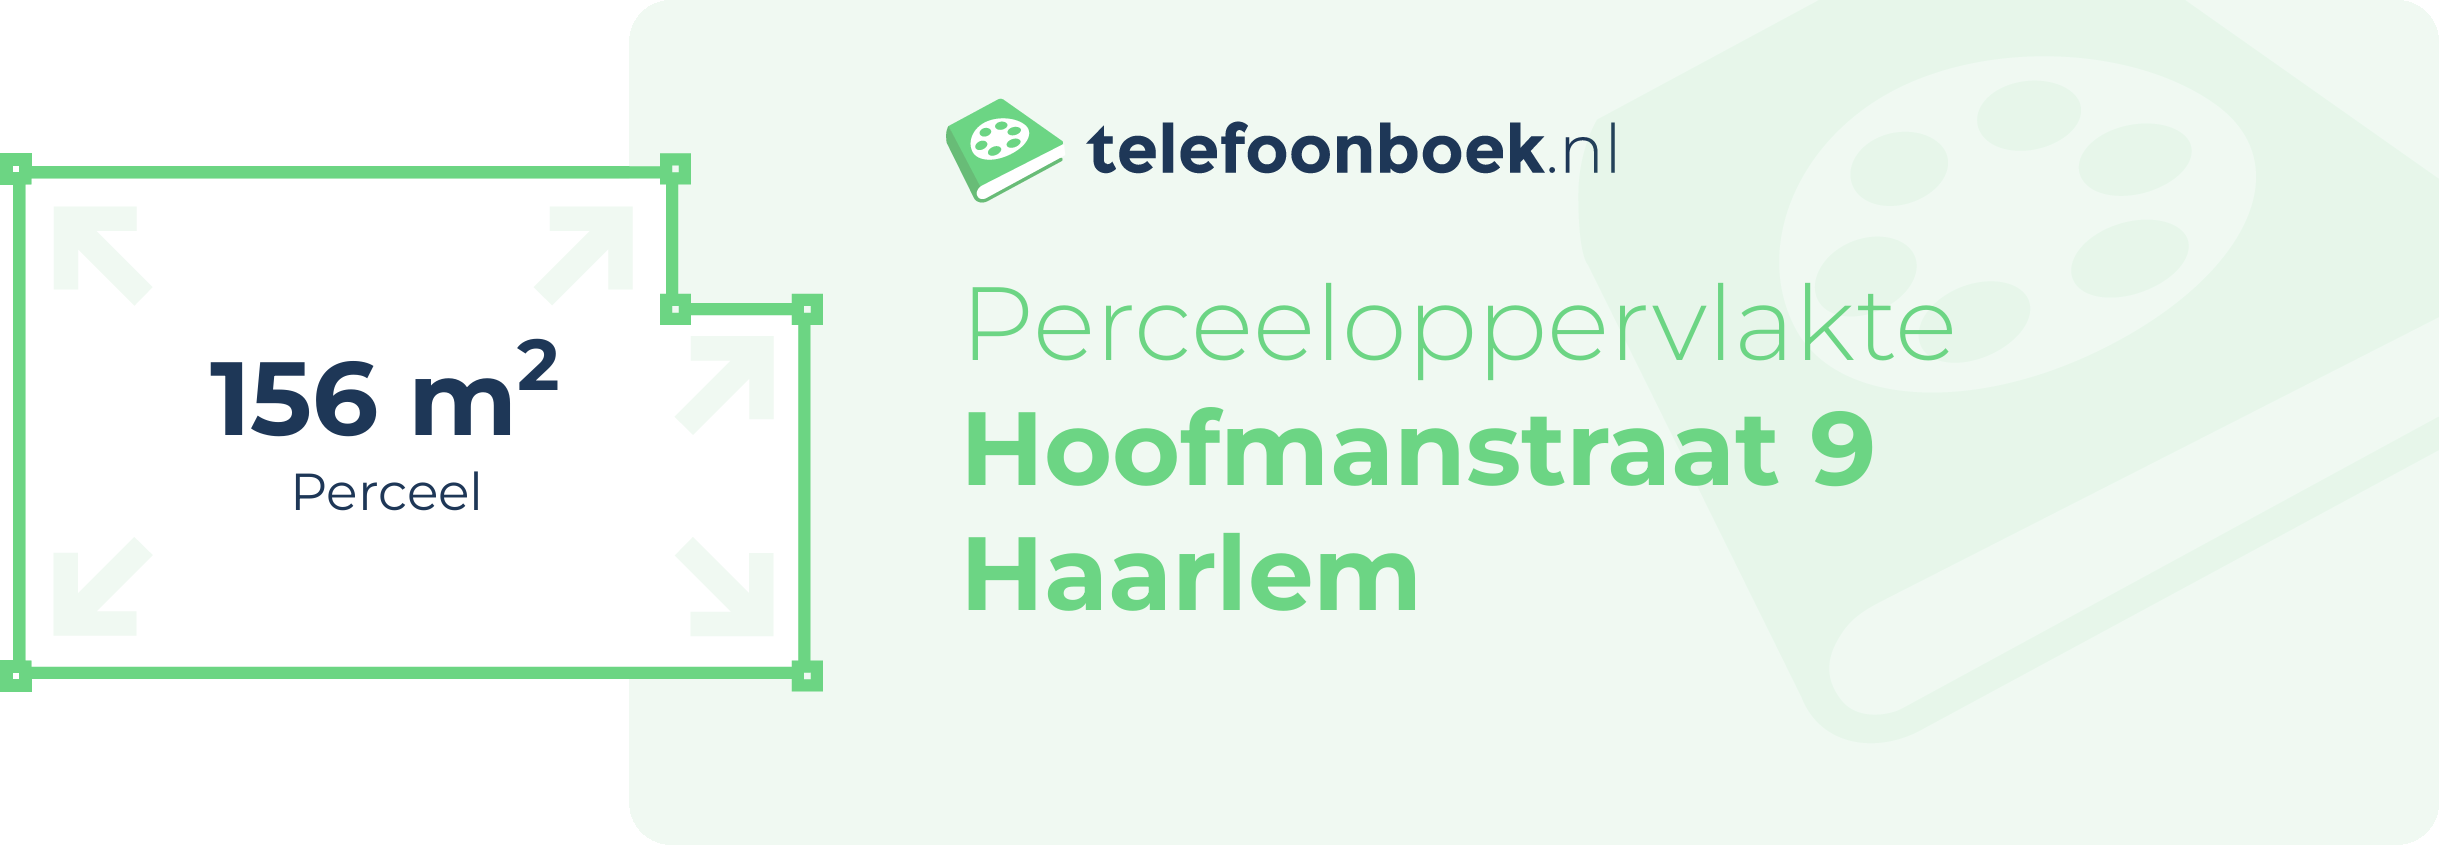 Perceeloppervlakte Hoofmanstraat 9 Haarlem